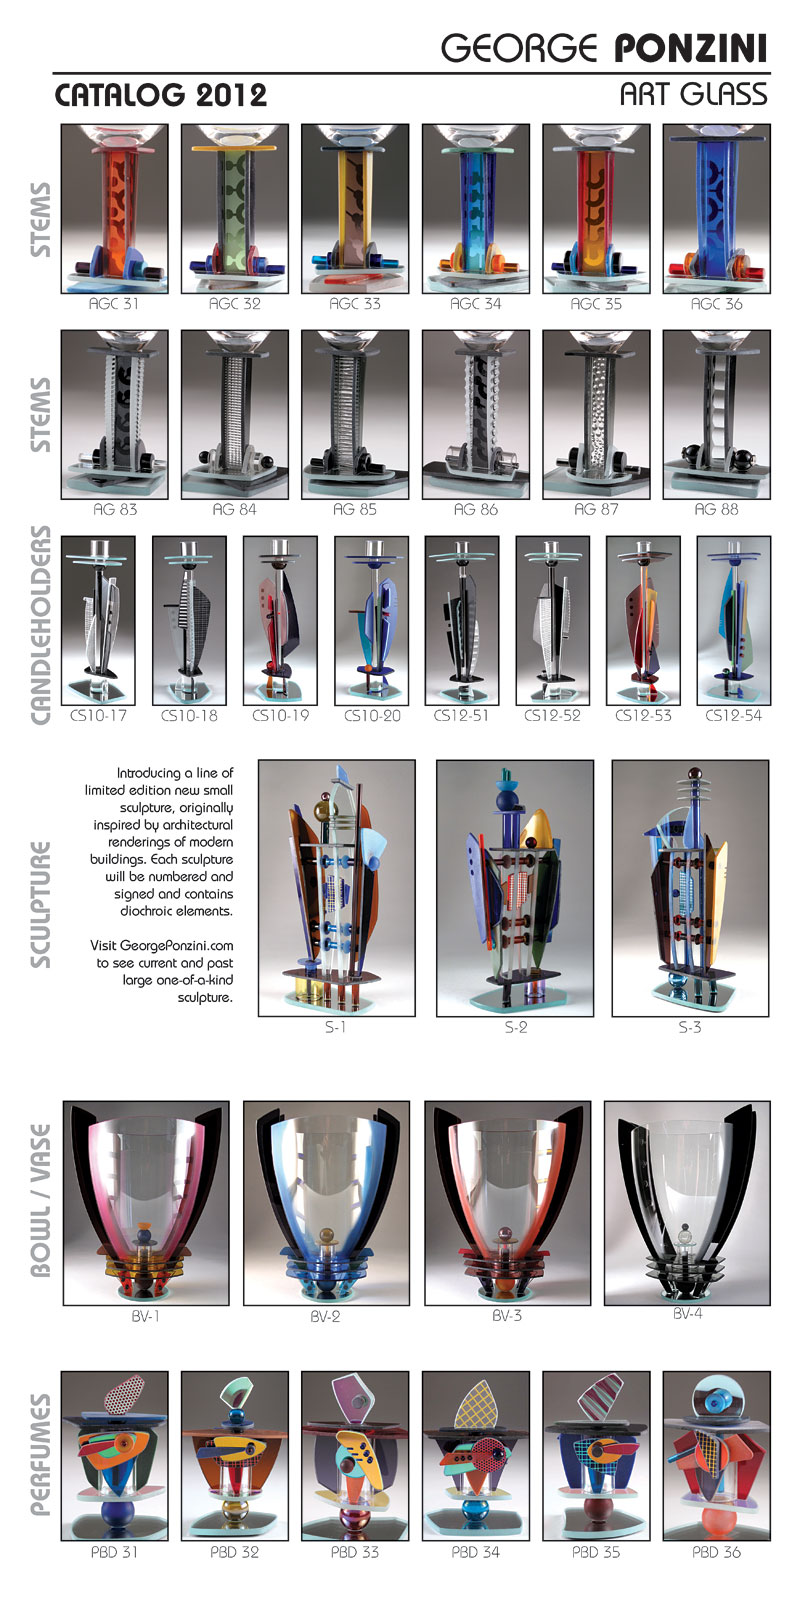 Ponzini Art Glass Catalog 2012 pg 1